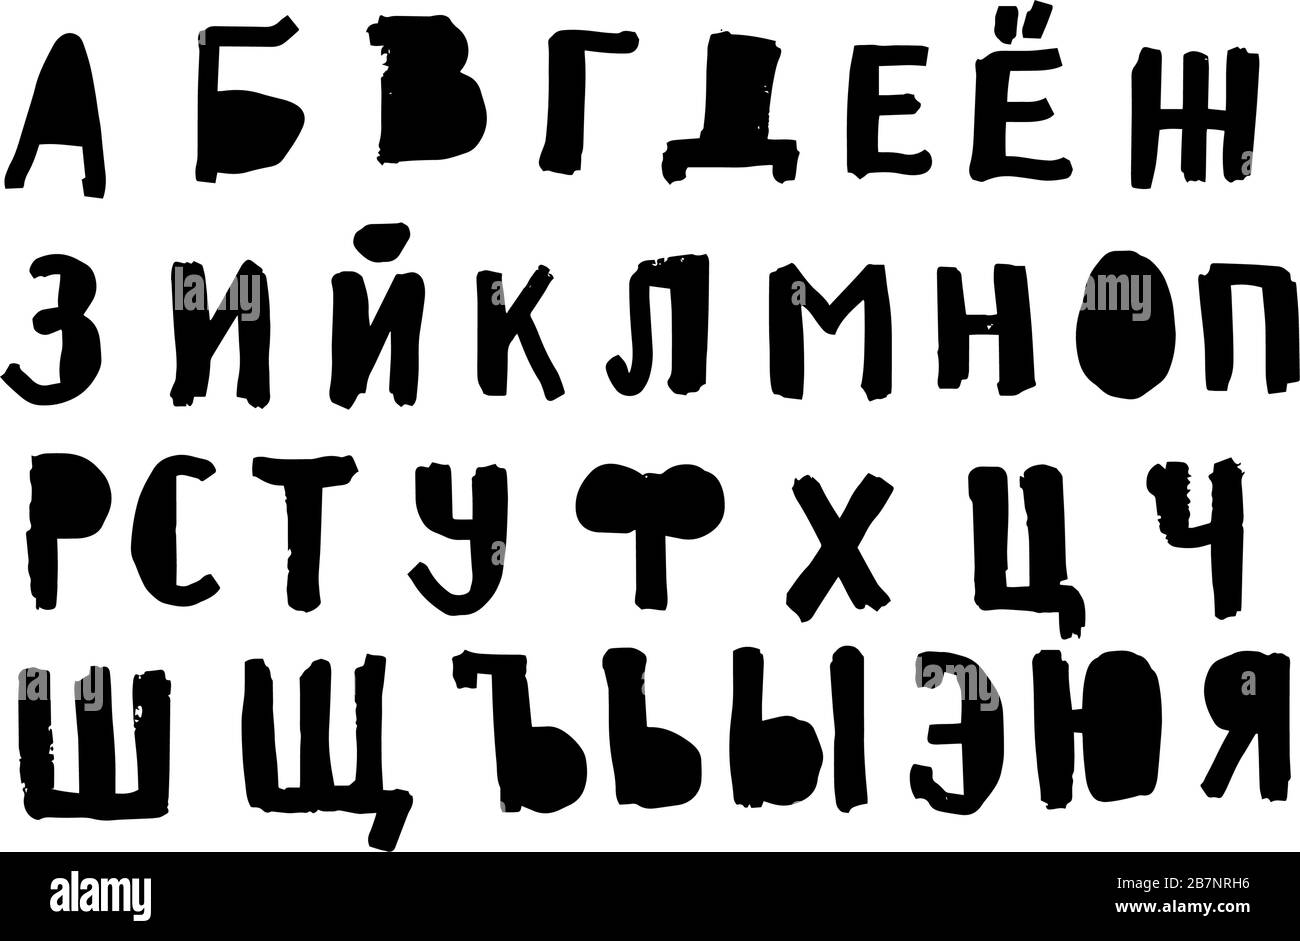 How to Draw Alphabet Lore (Y), Dibujando Alphabet Lore - Y